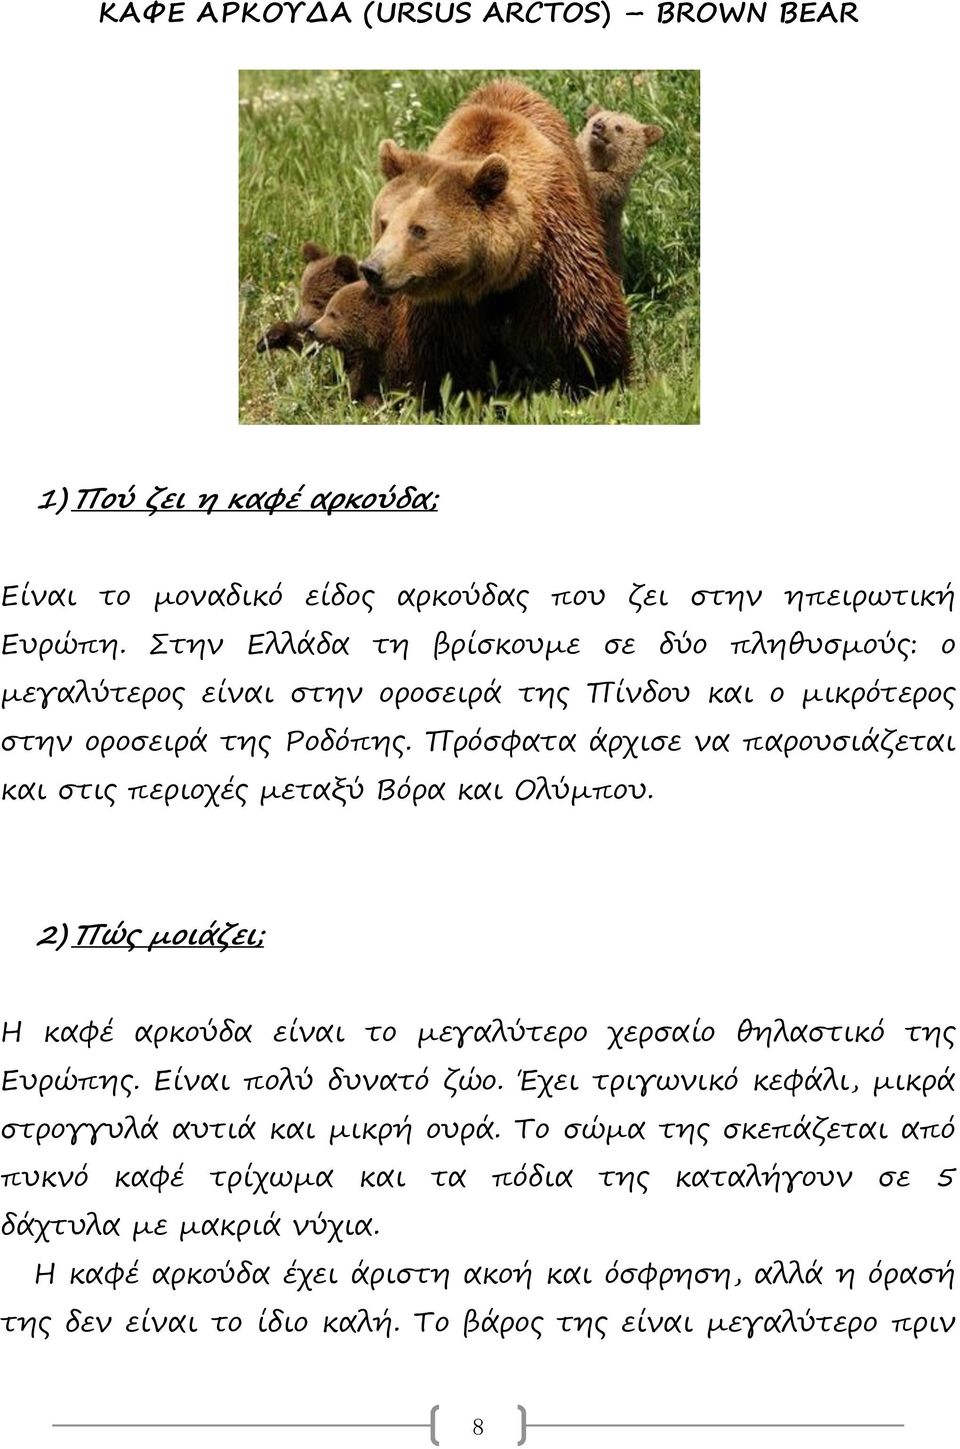 Πρόσφατα άρχισε να παρουσιάζεται και στις περιοχές μεταξύ Βόρα και Ολύμπου. 2) Πώς μοιάζει; Η καφέ αρκούδα είναι το μεγαλύτερο χερσαίο θηλαστικό της Ευρώπης. Είναι πολύ δυνατό ζώο.